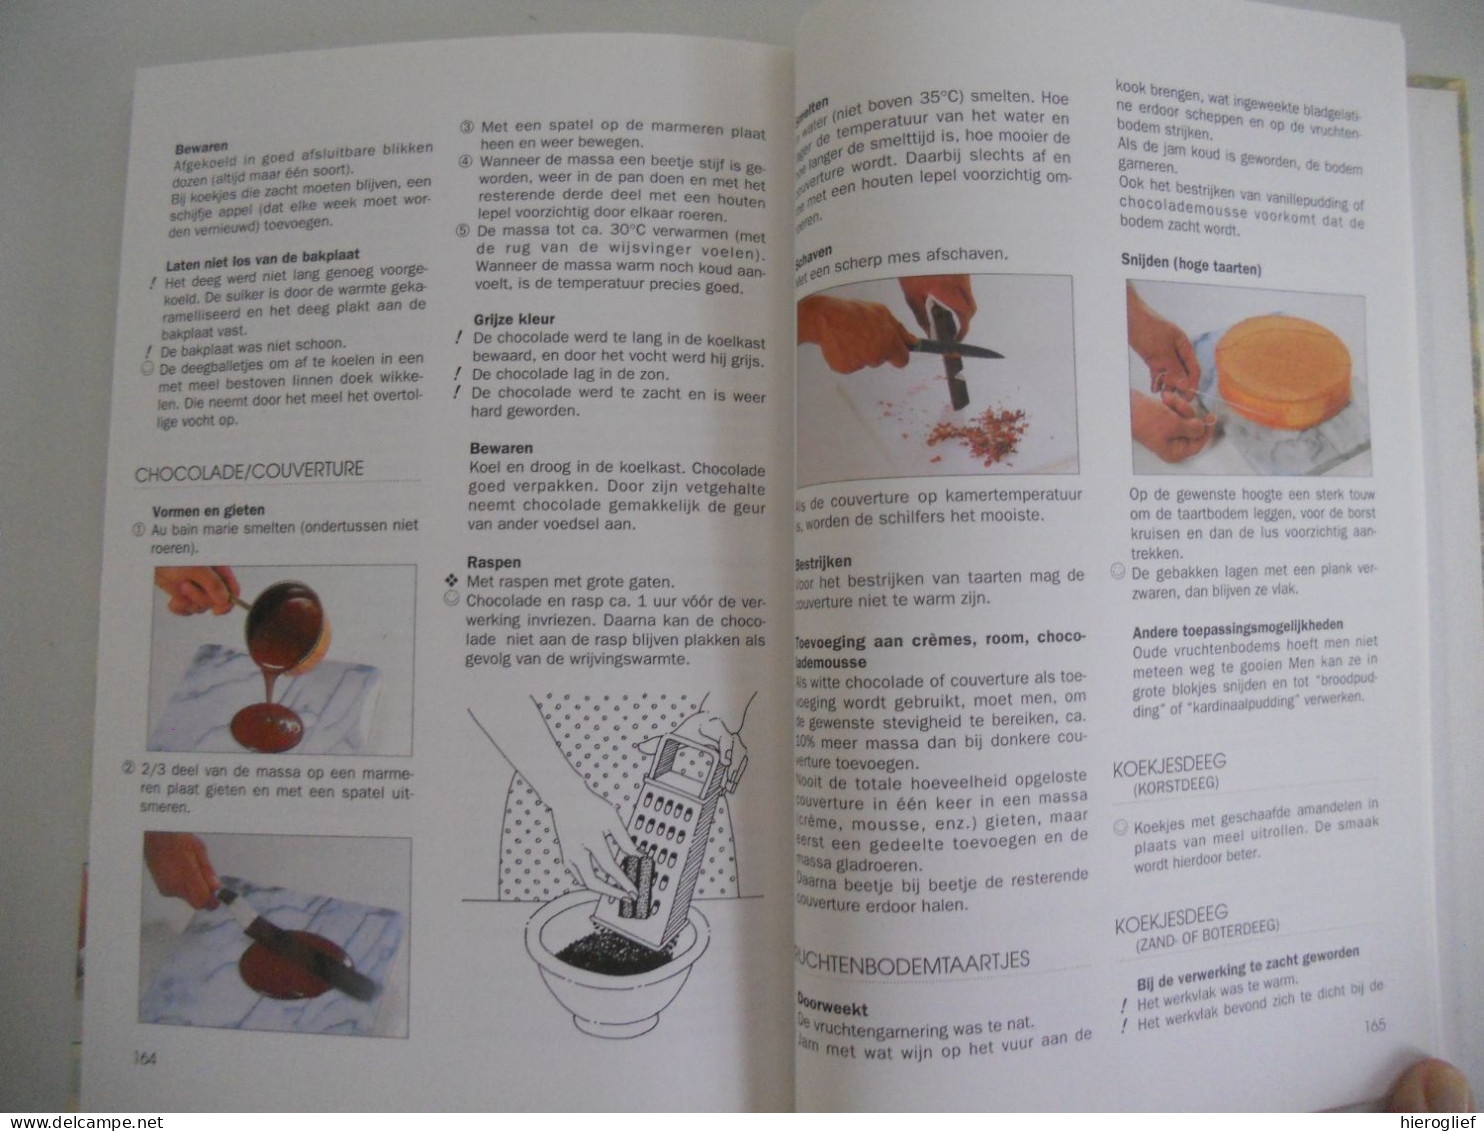 2000 handige keukentips door H.P. Matkowitz J.L. Raskin-Shmitz tips keuken koken voeding voedsel bereiden bewaren